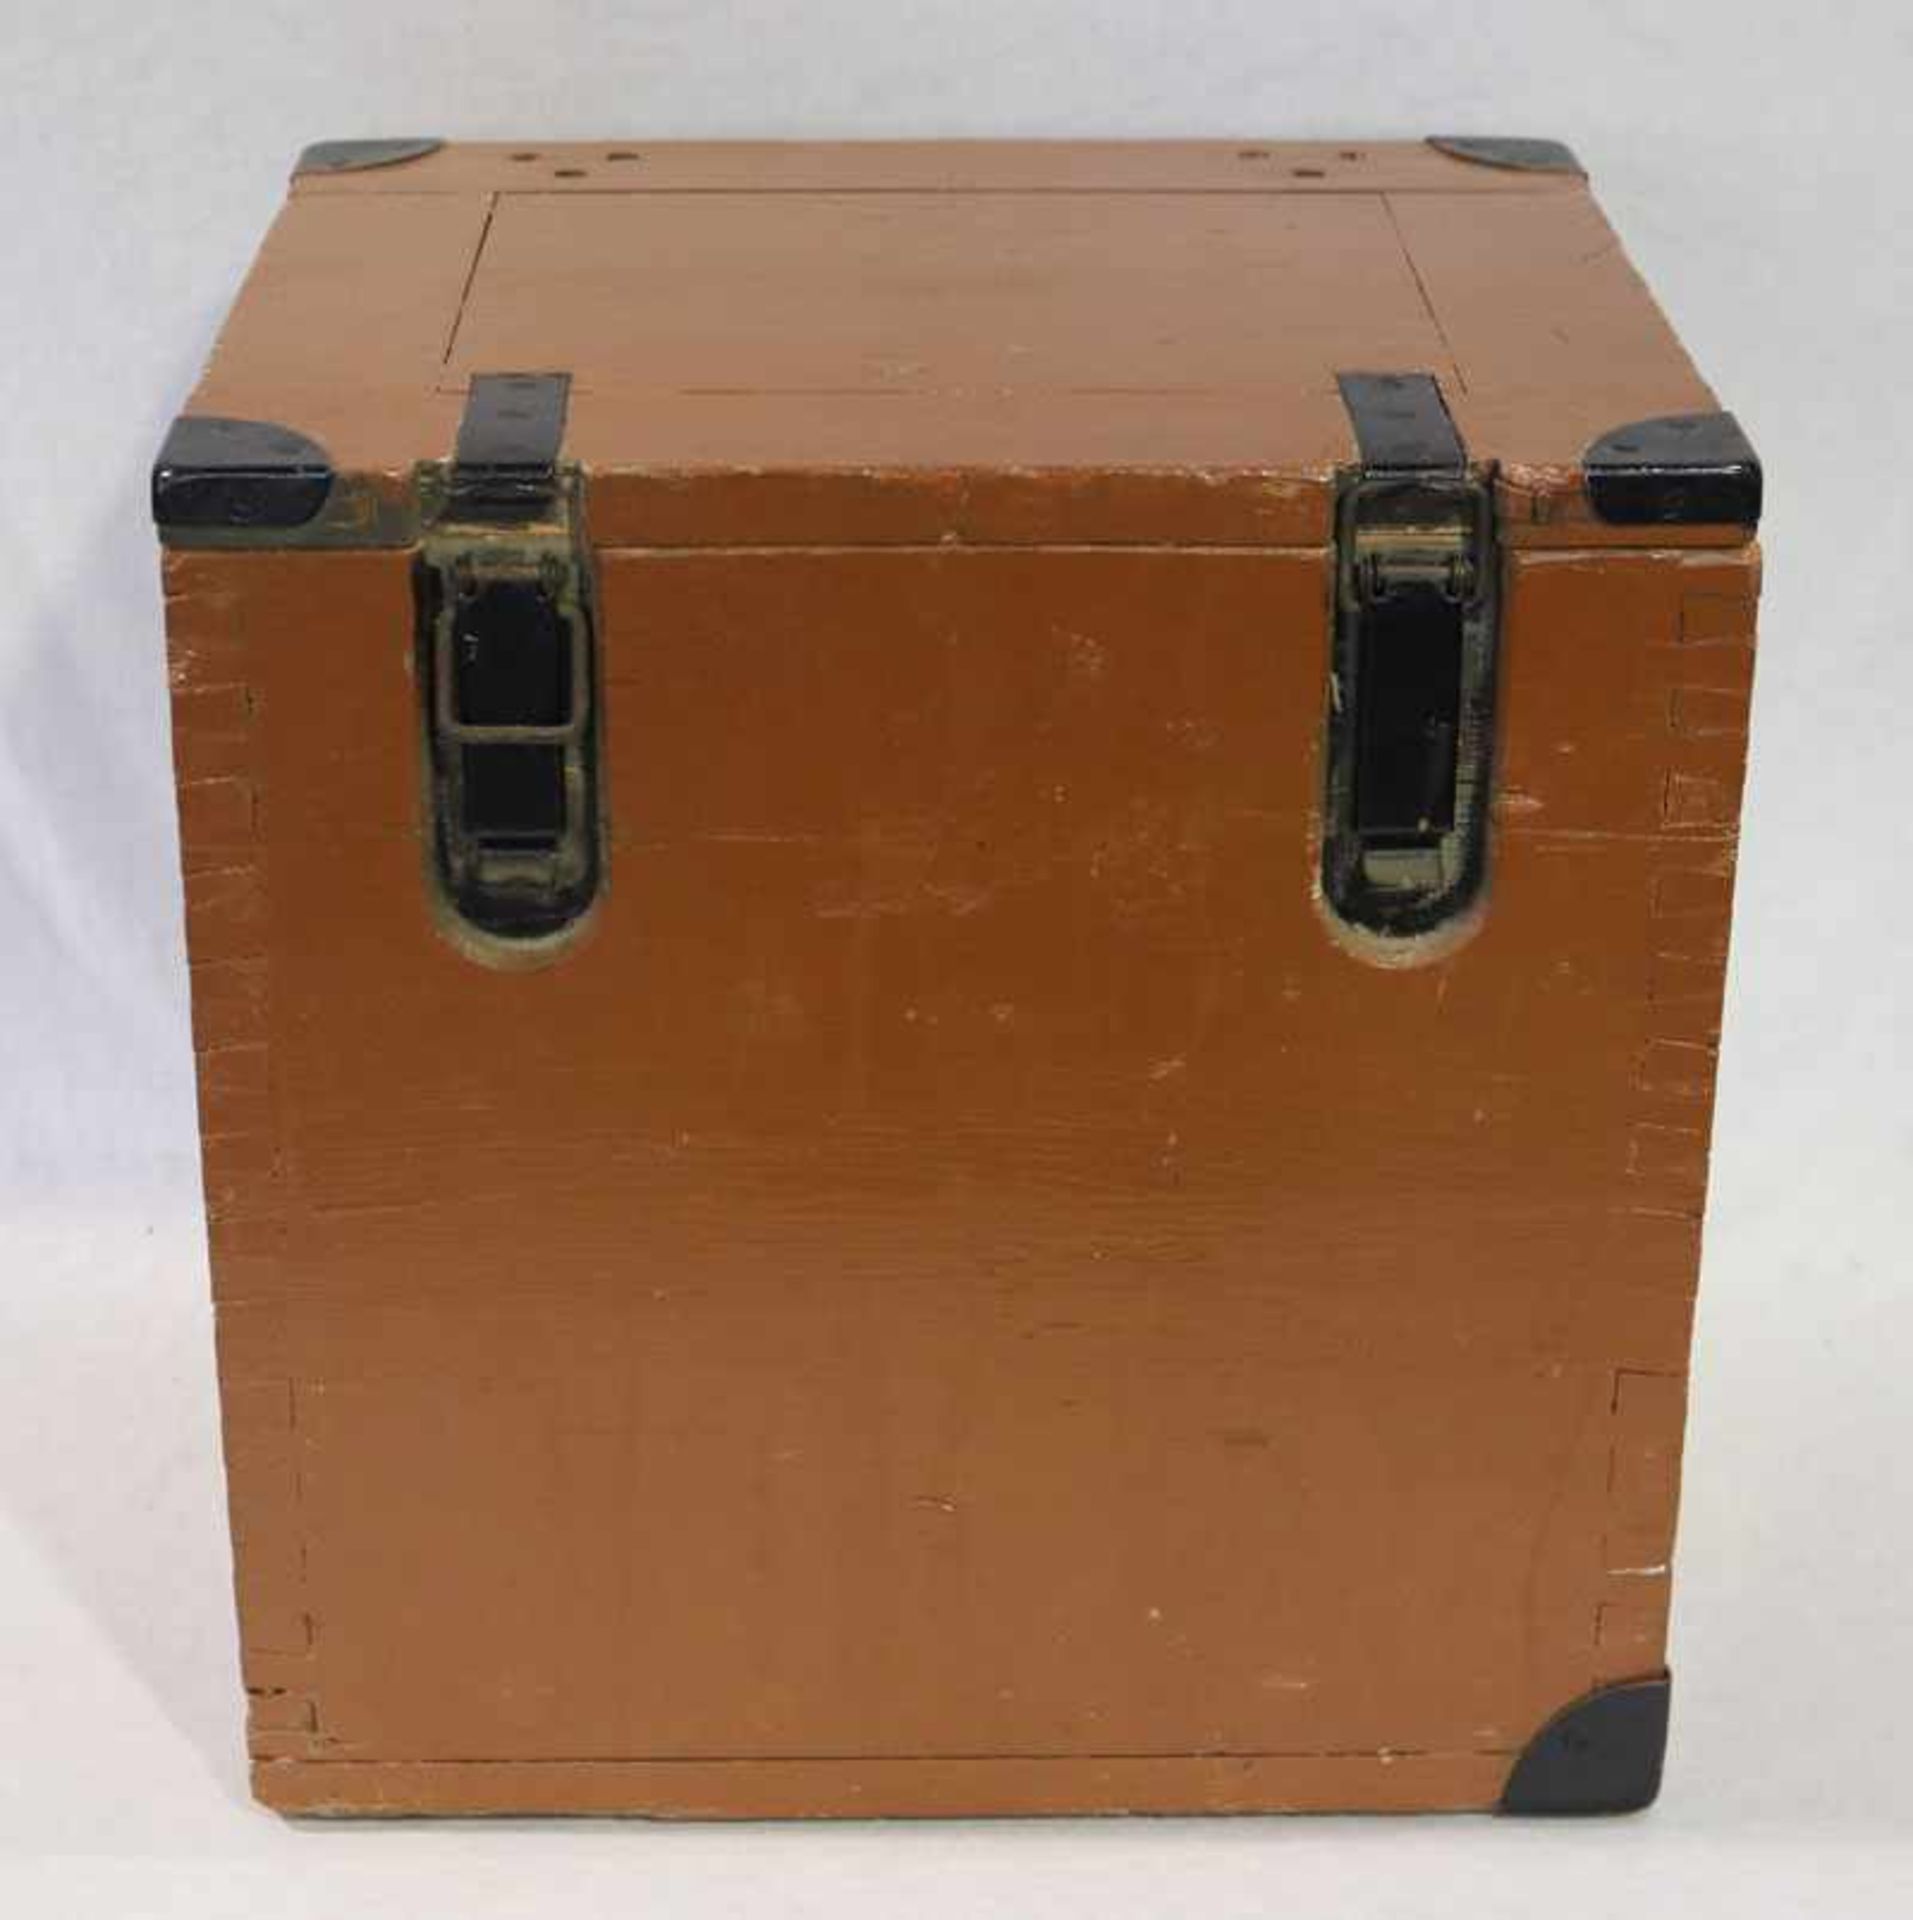 Holzkiste mit Metallbeschlägen, H 40 cm, B 40 cm, T 34 cm, Versand per Spedition